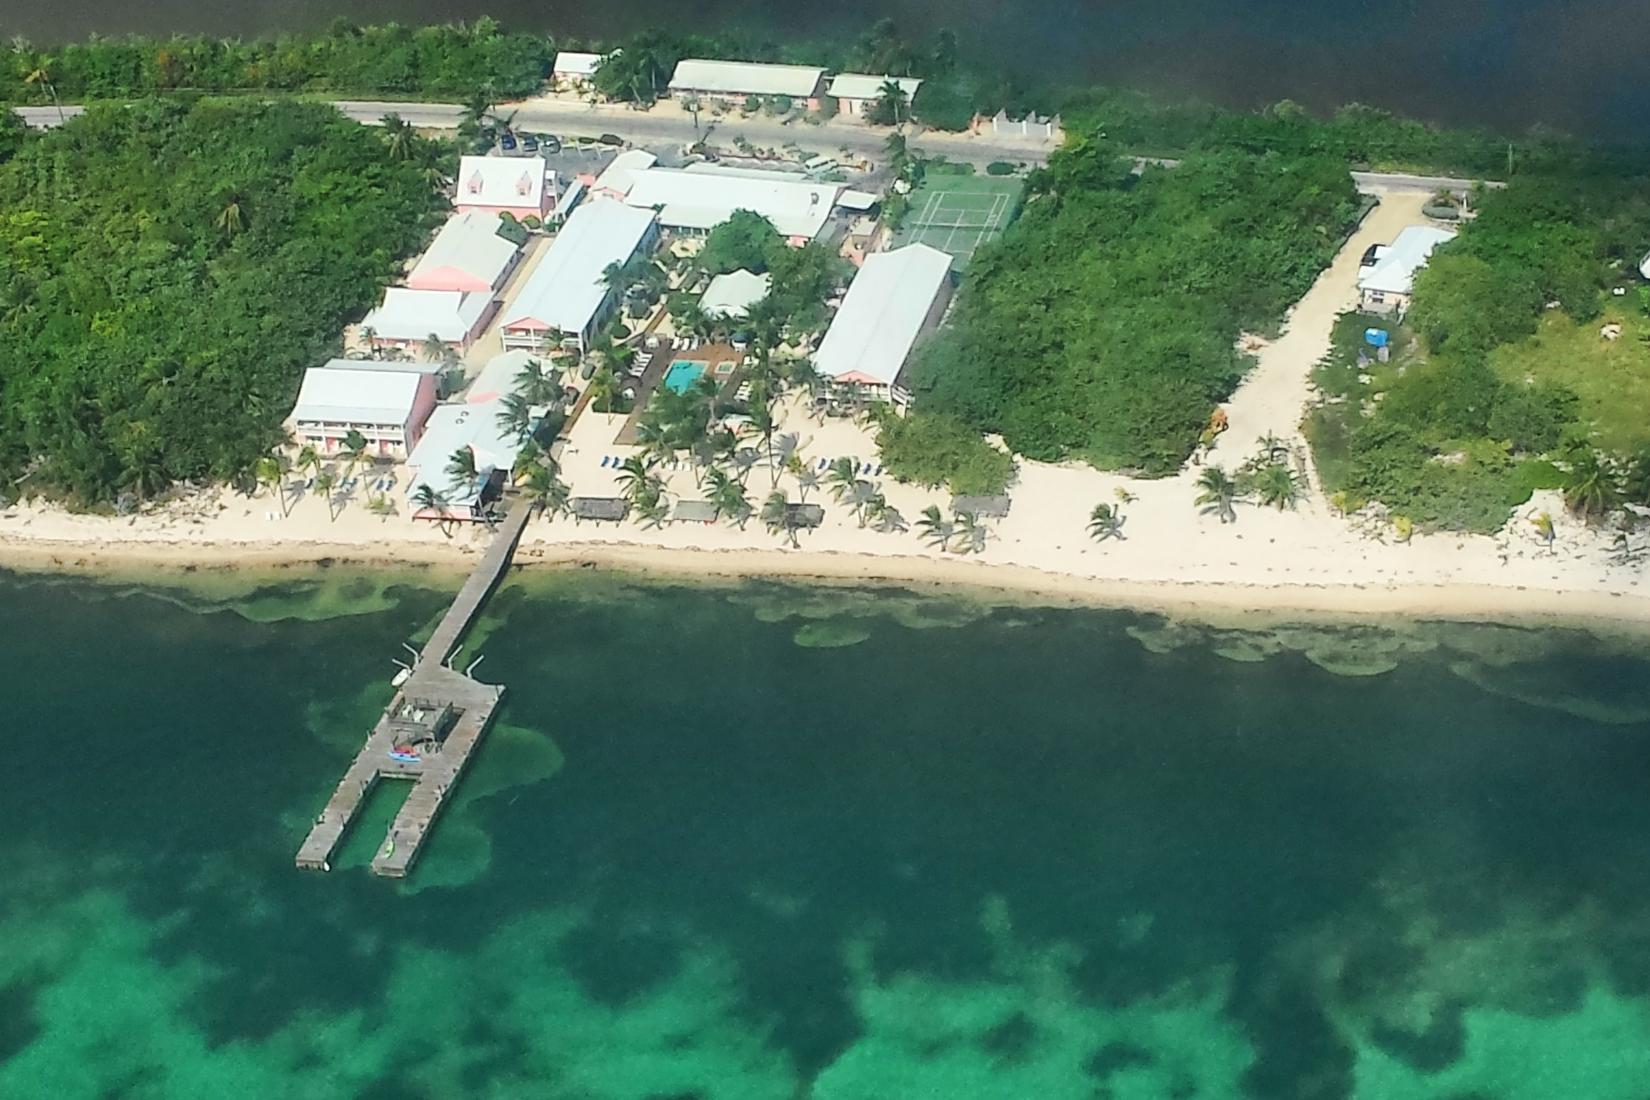 Sandee - Little Cayman Beach Resort